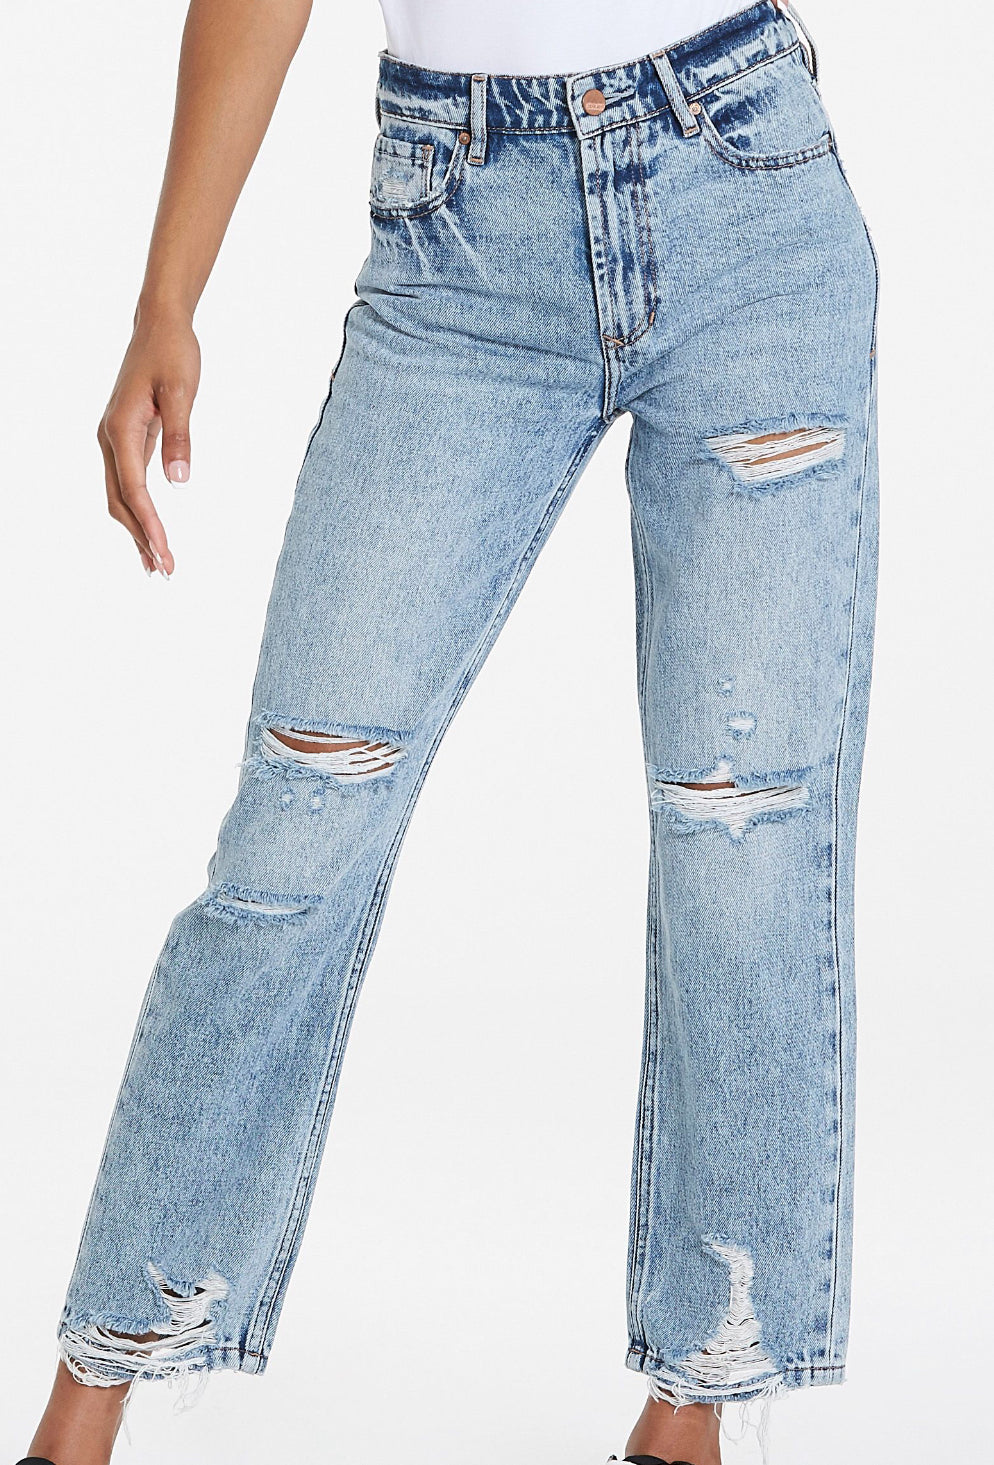 Jodi Lake City Jeans